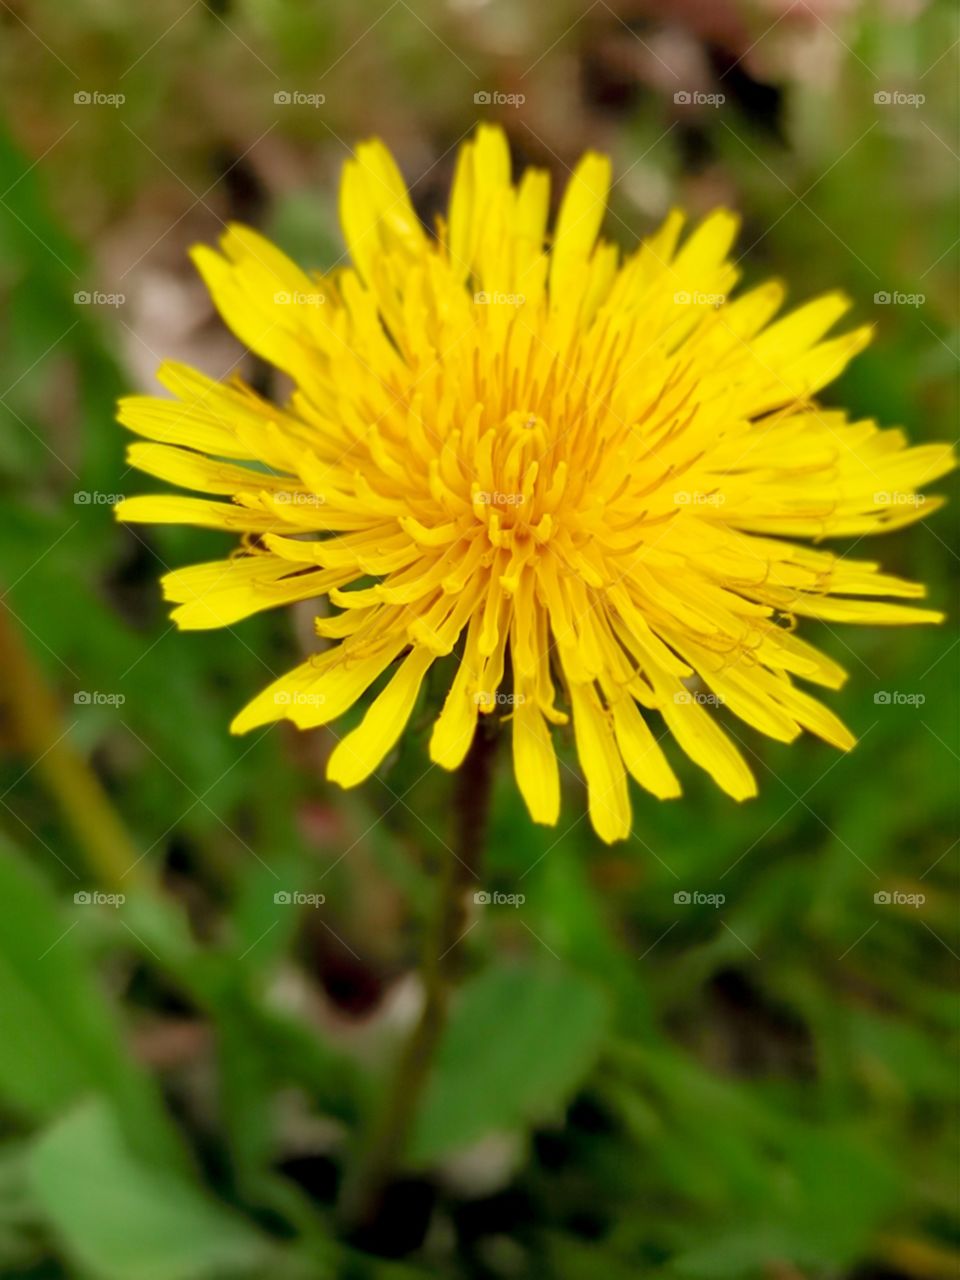 a bright yellow dandelion